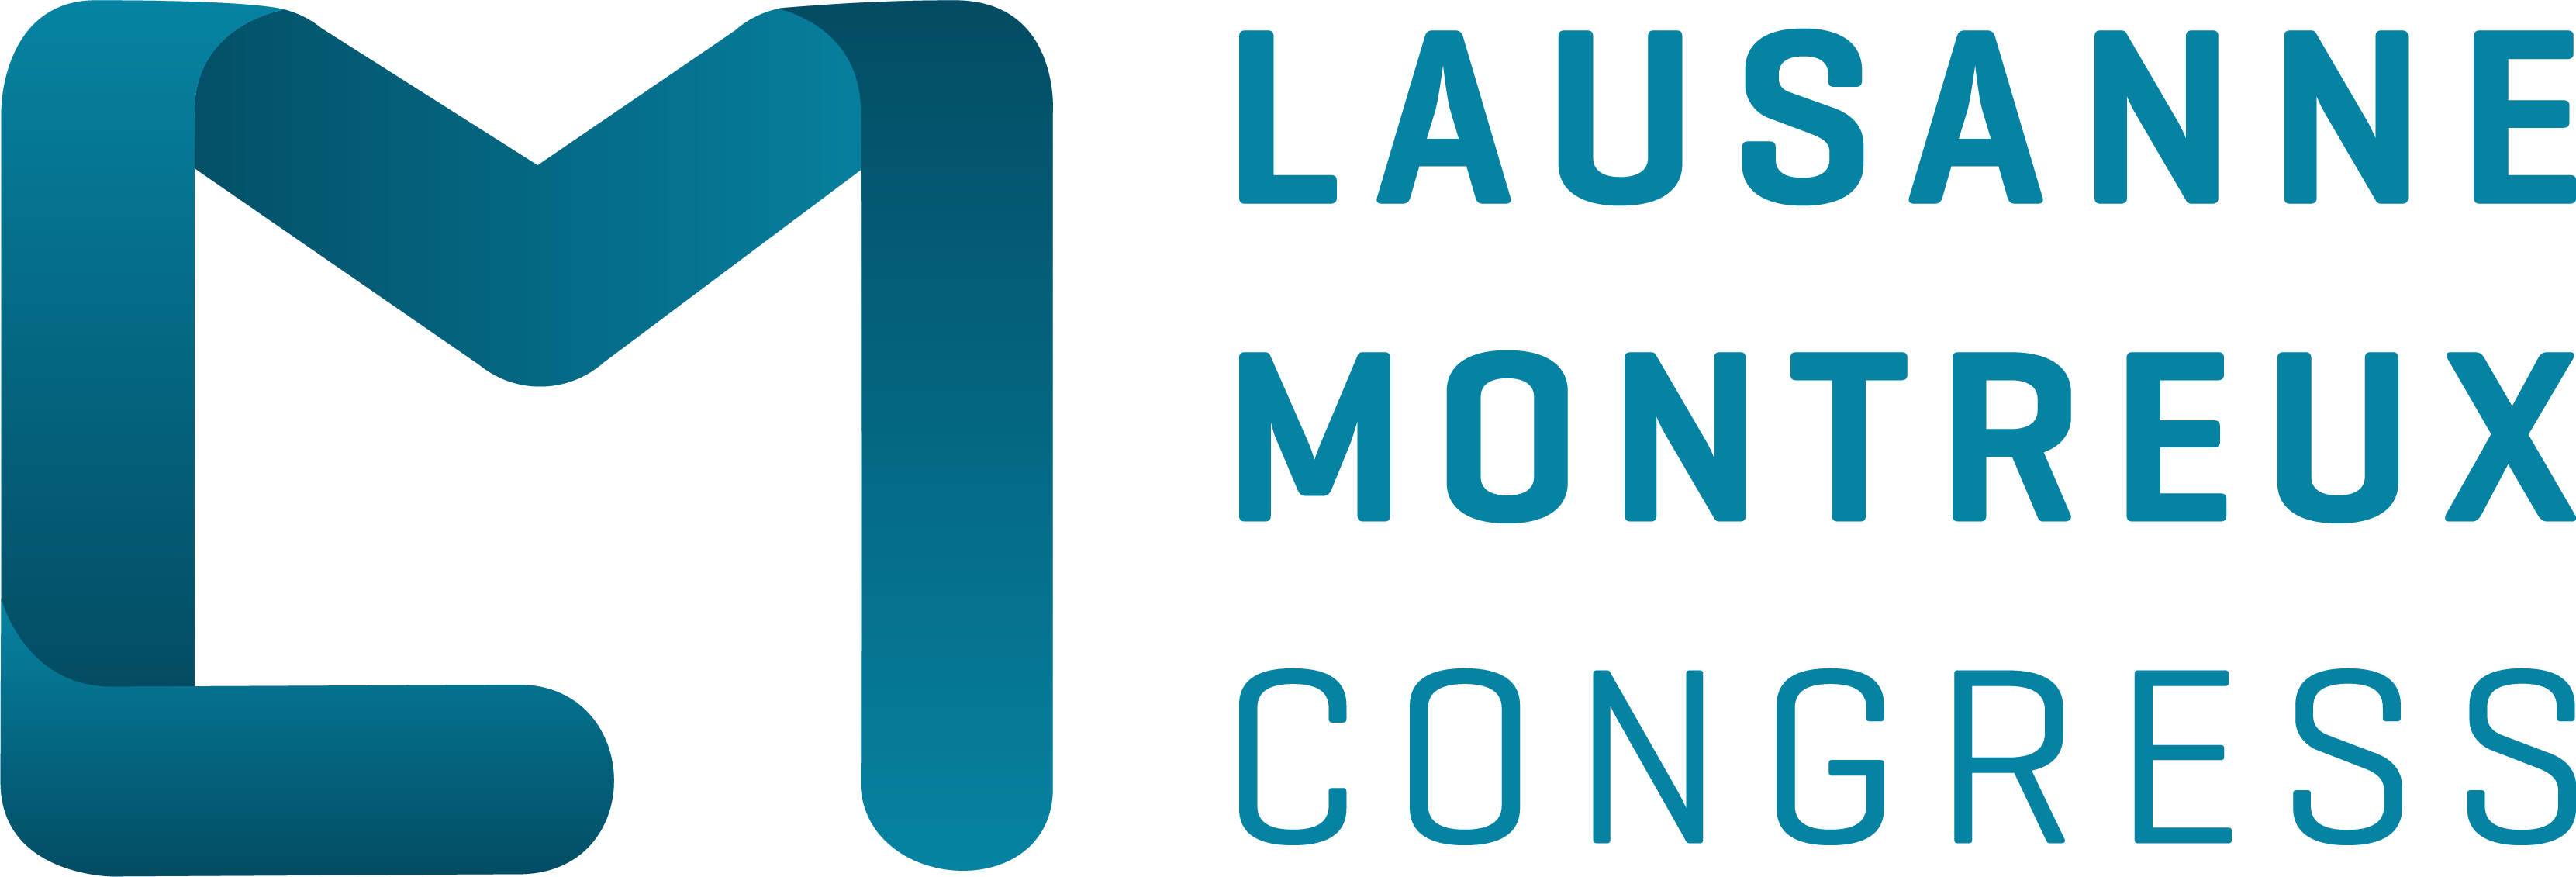 logo lausanne montreux congrès